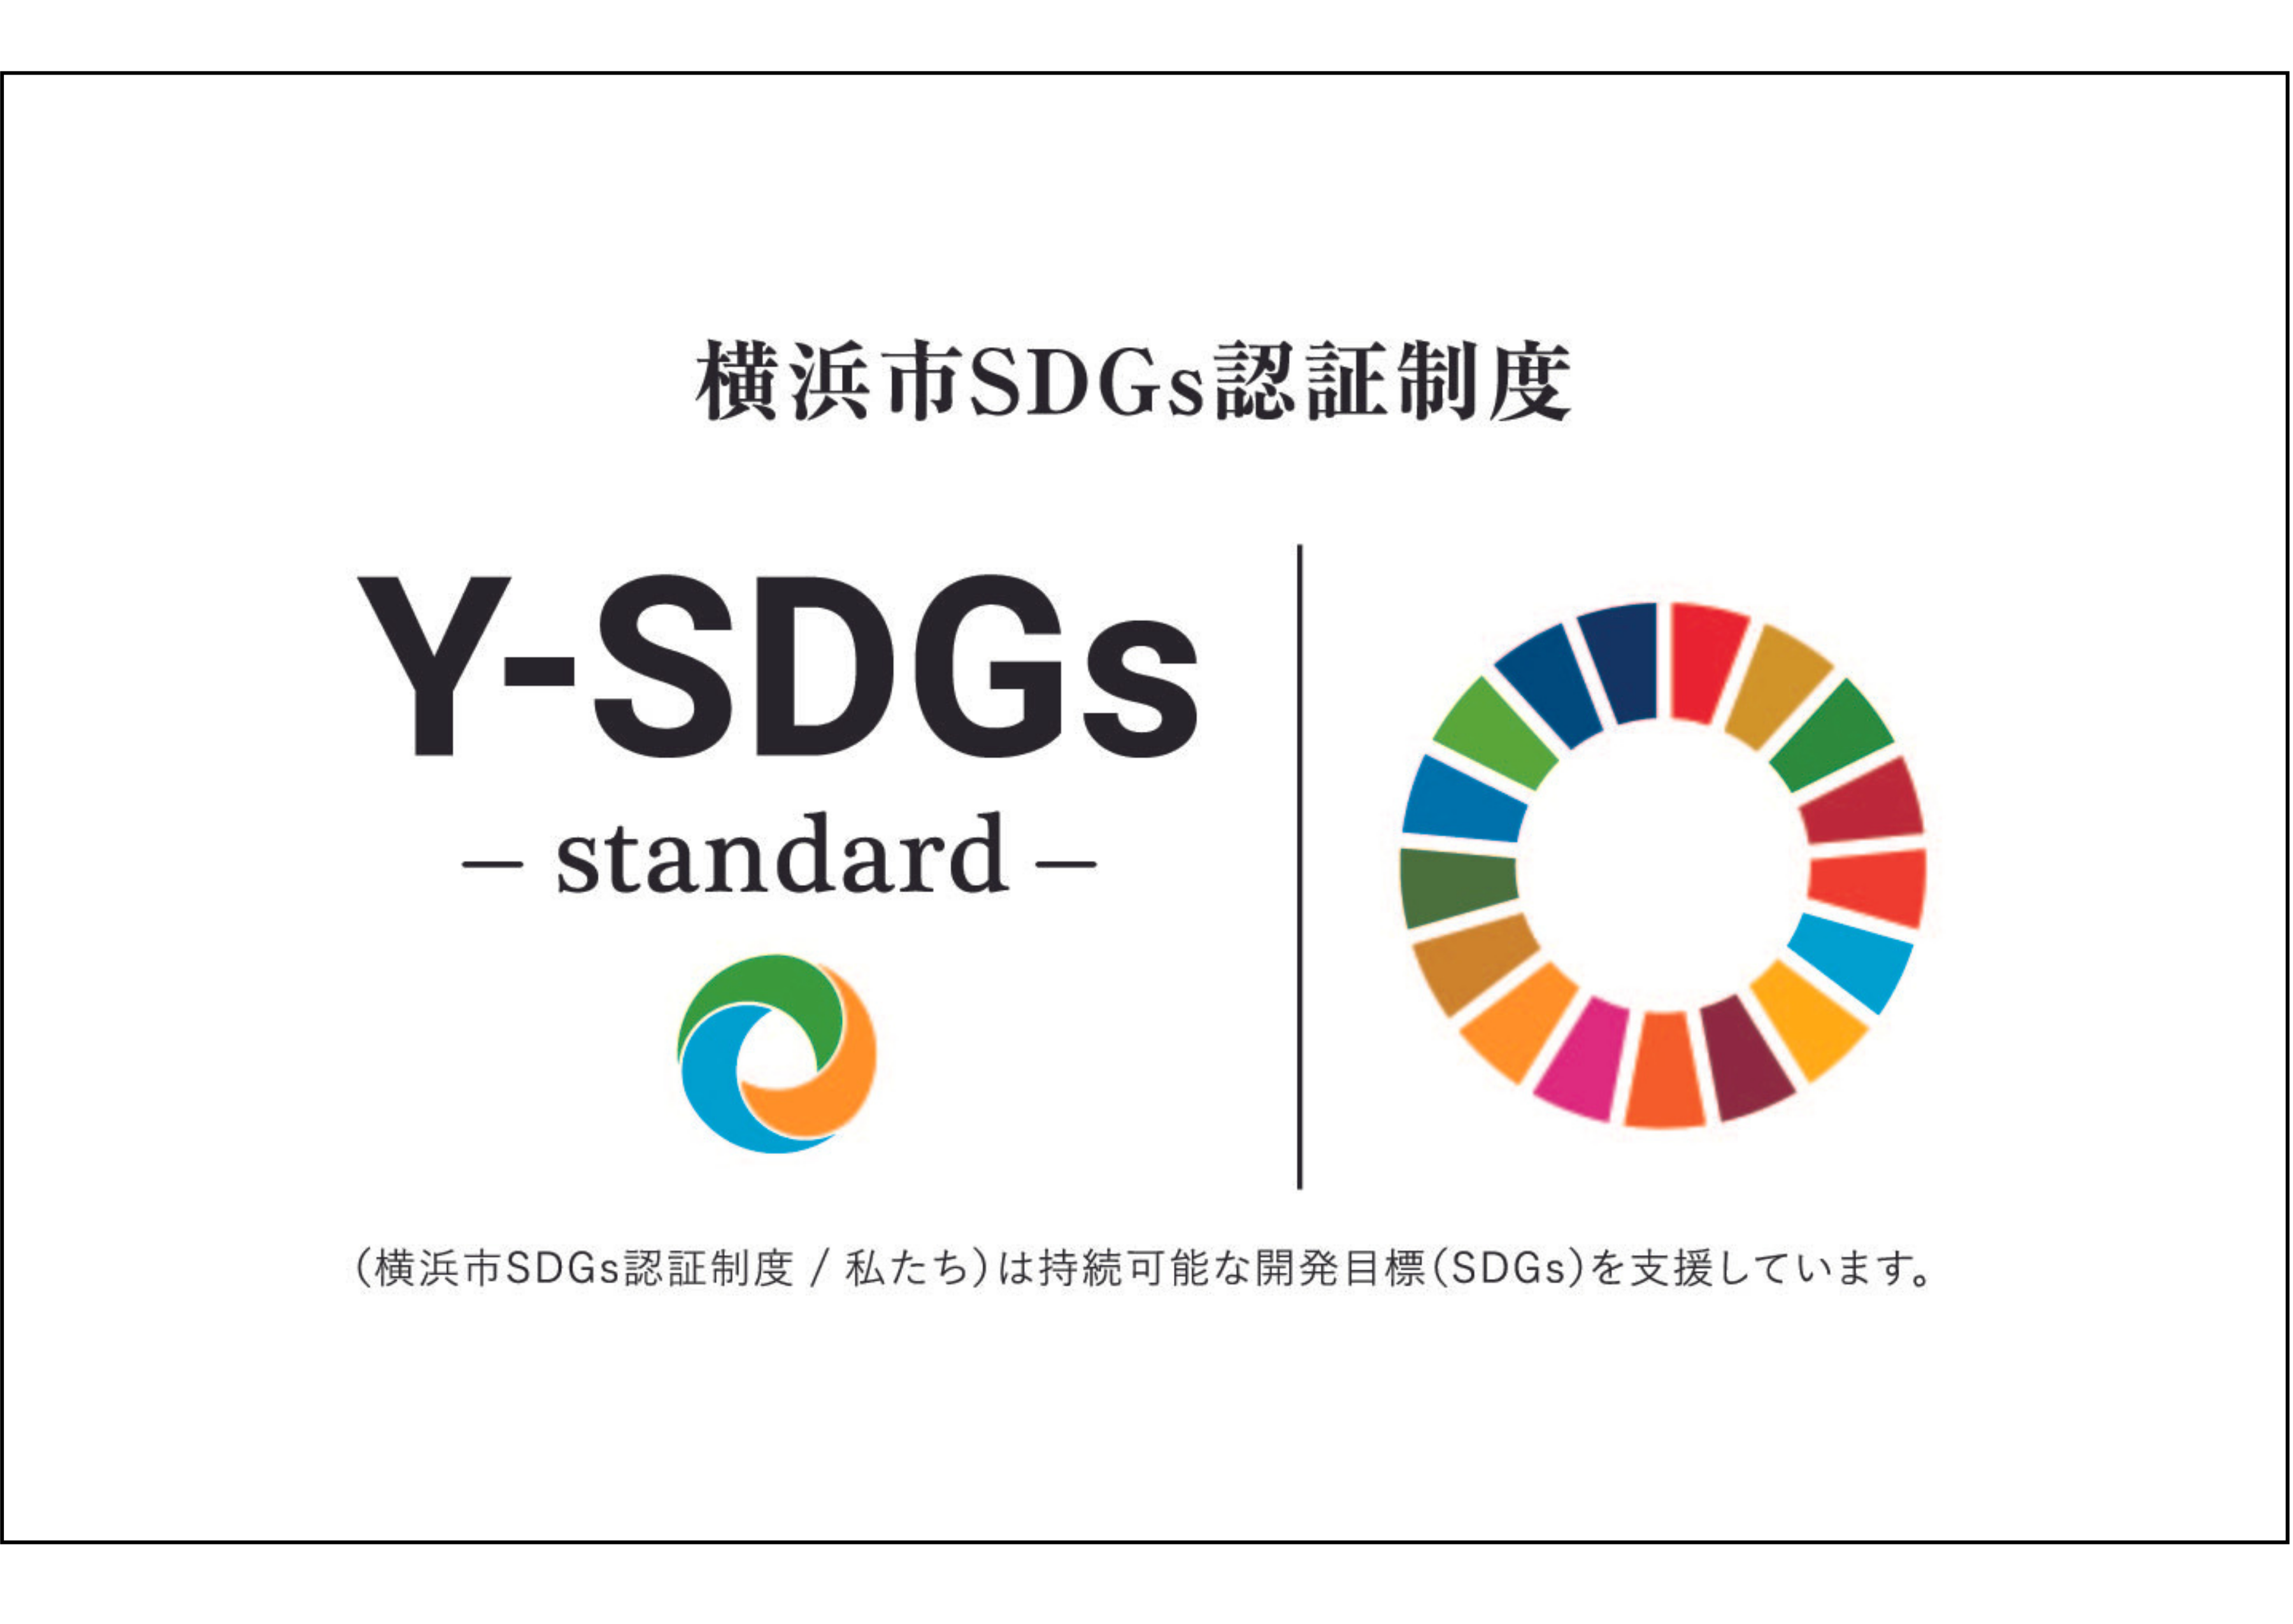 株式会社フロンティアハウスが、横浜市SDGs認証制度